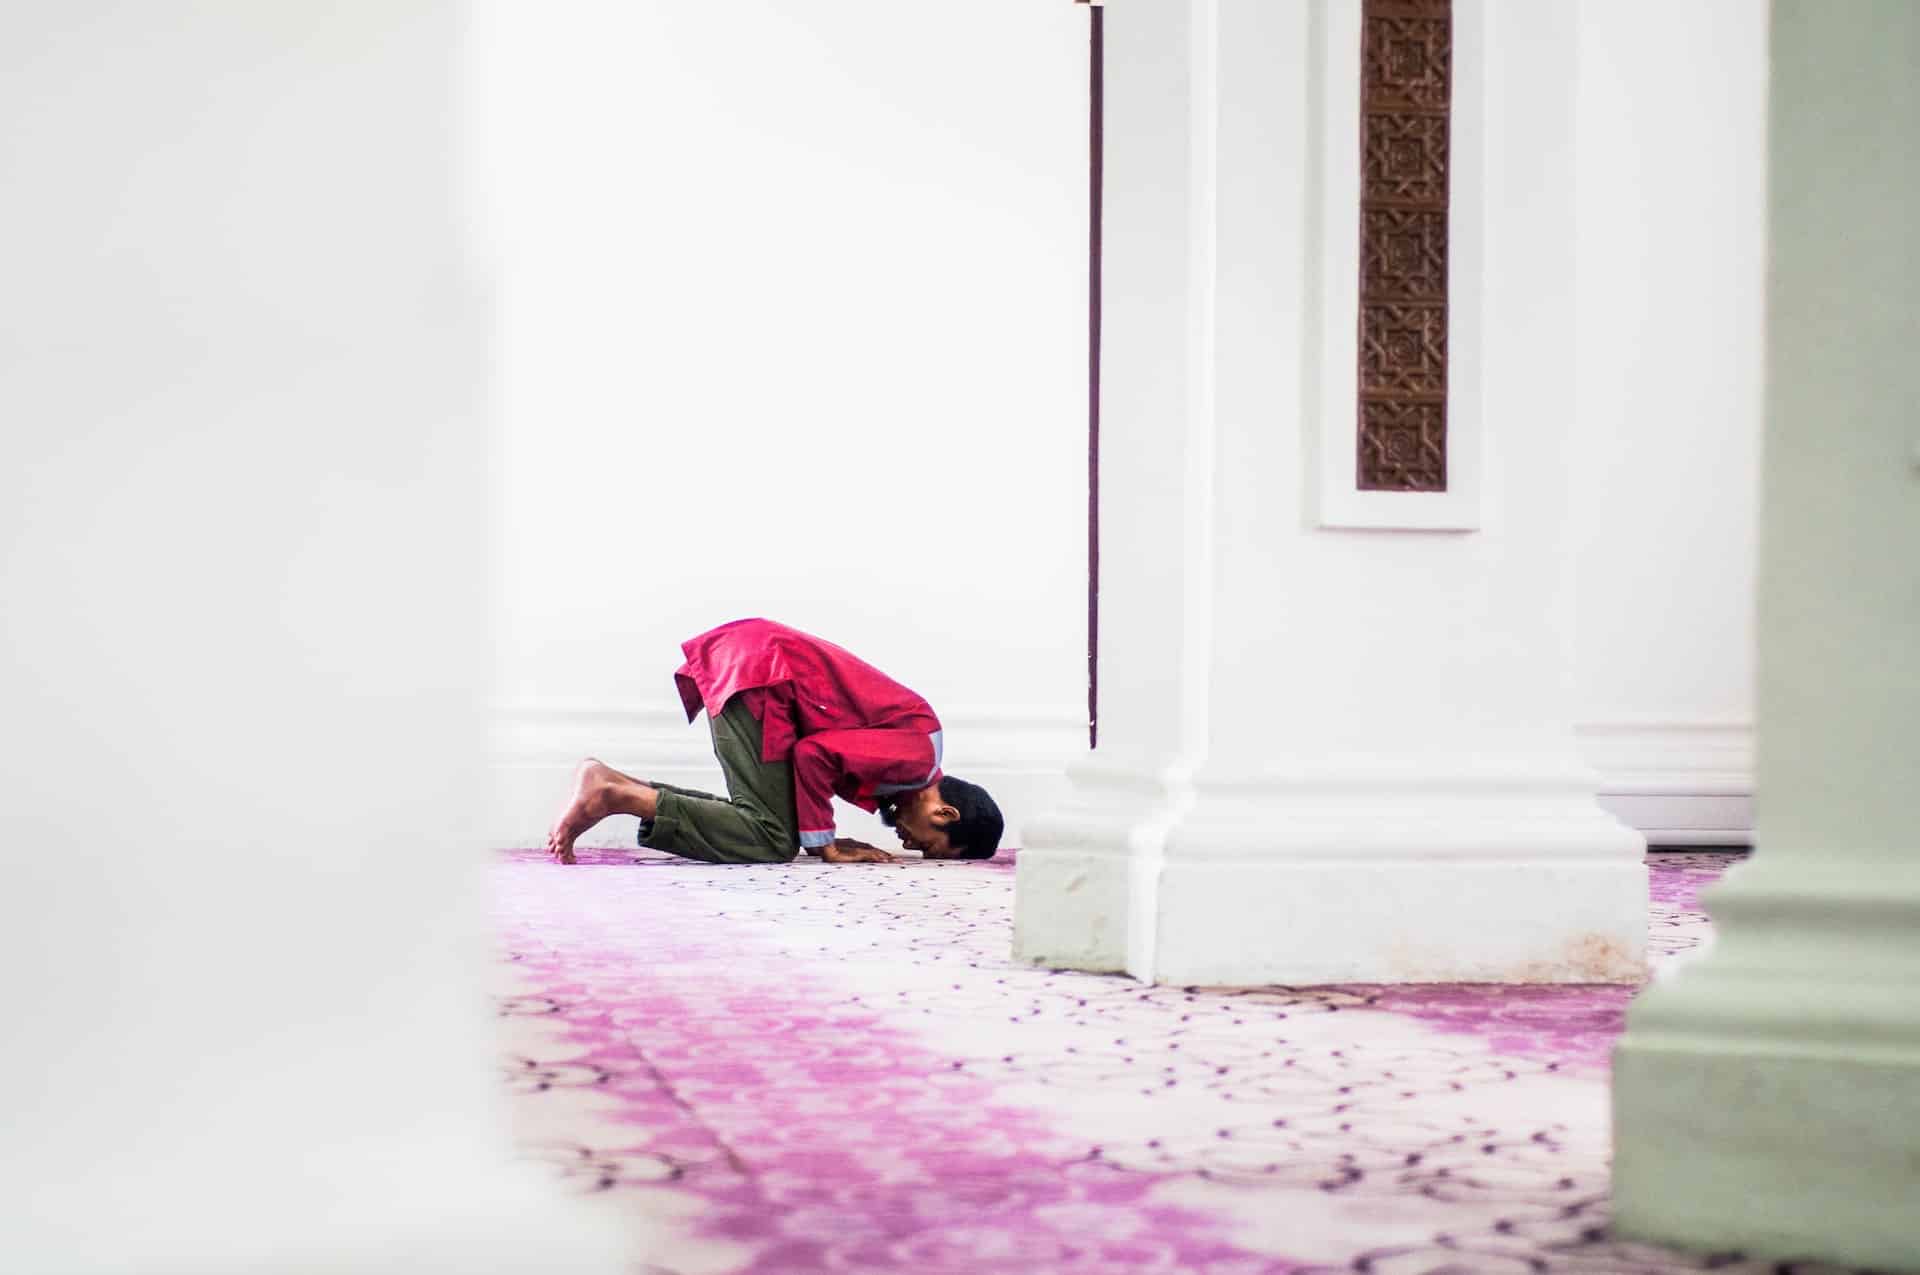 muslim man praying in mosque to perform hajj or umrah